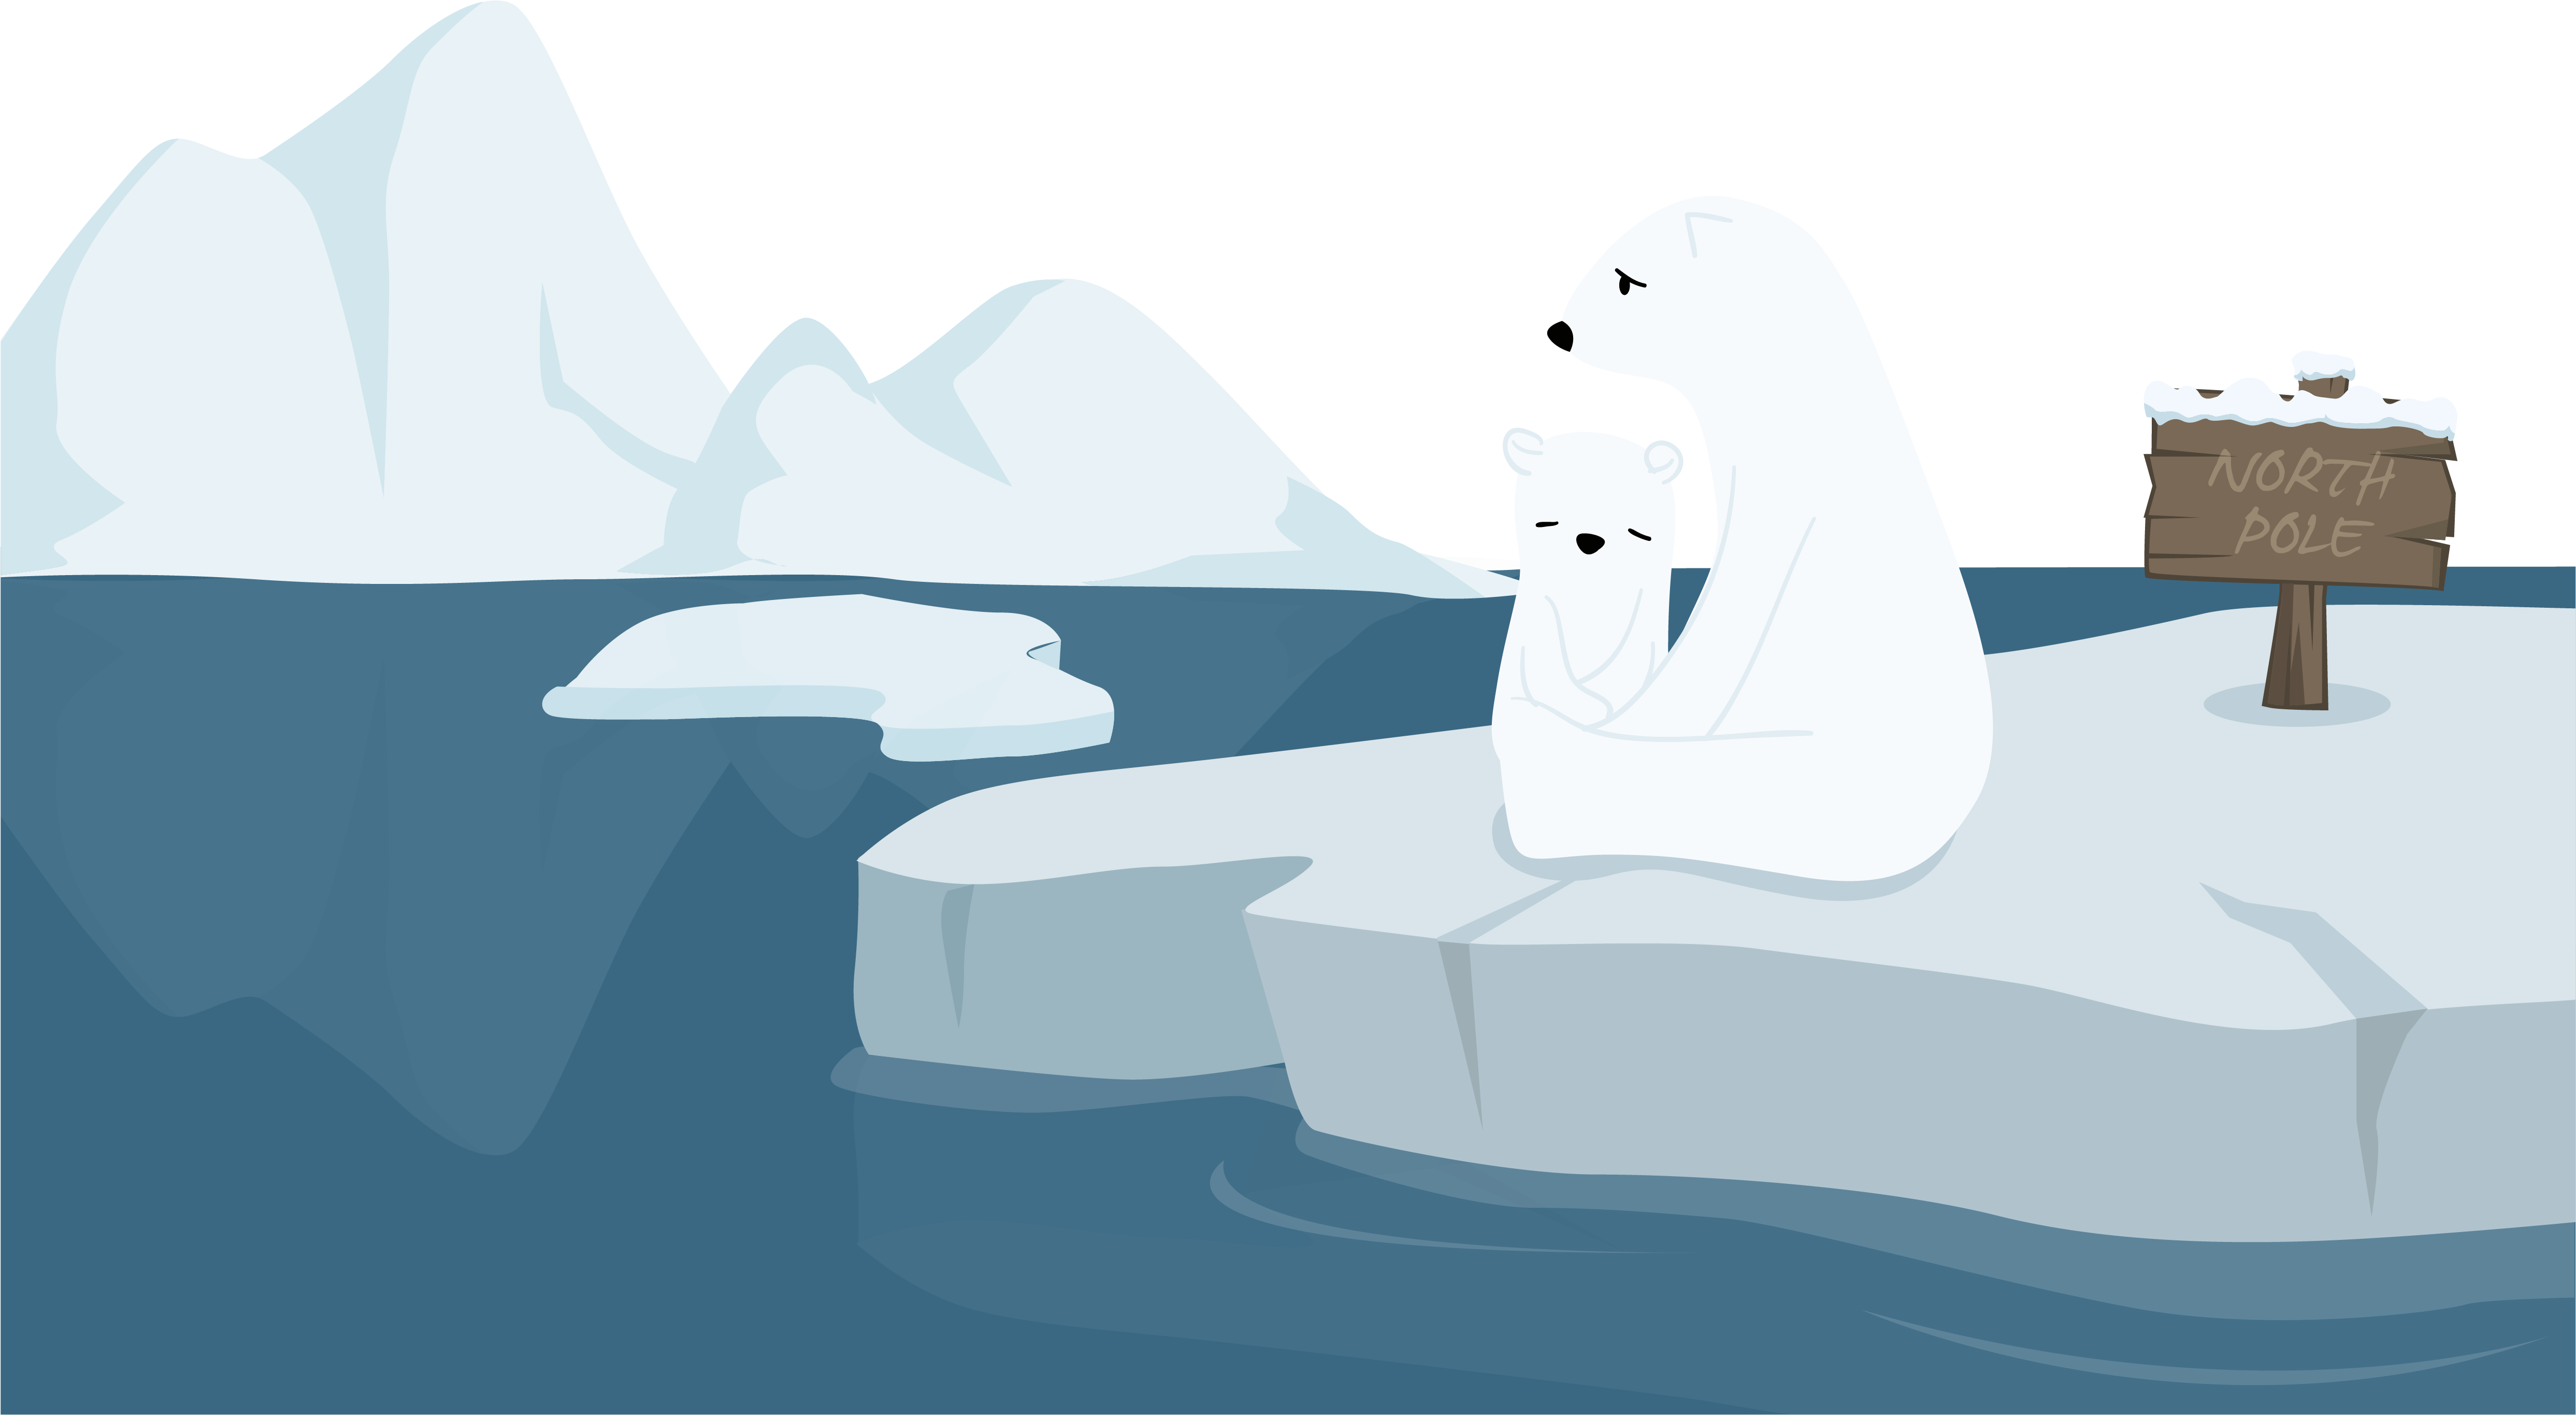 A Cartoon Of Polar Bears Sitting On An Iceberg